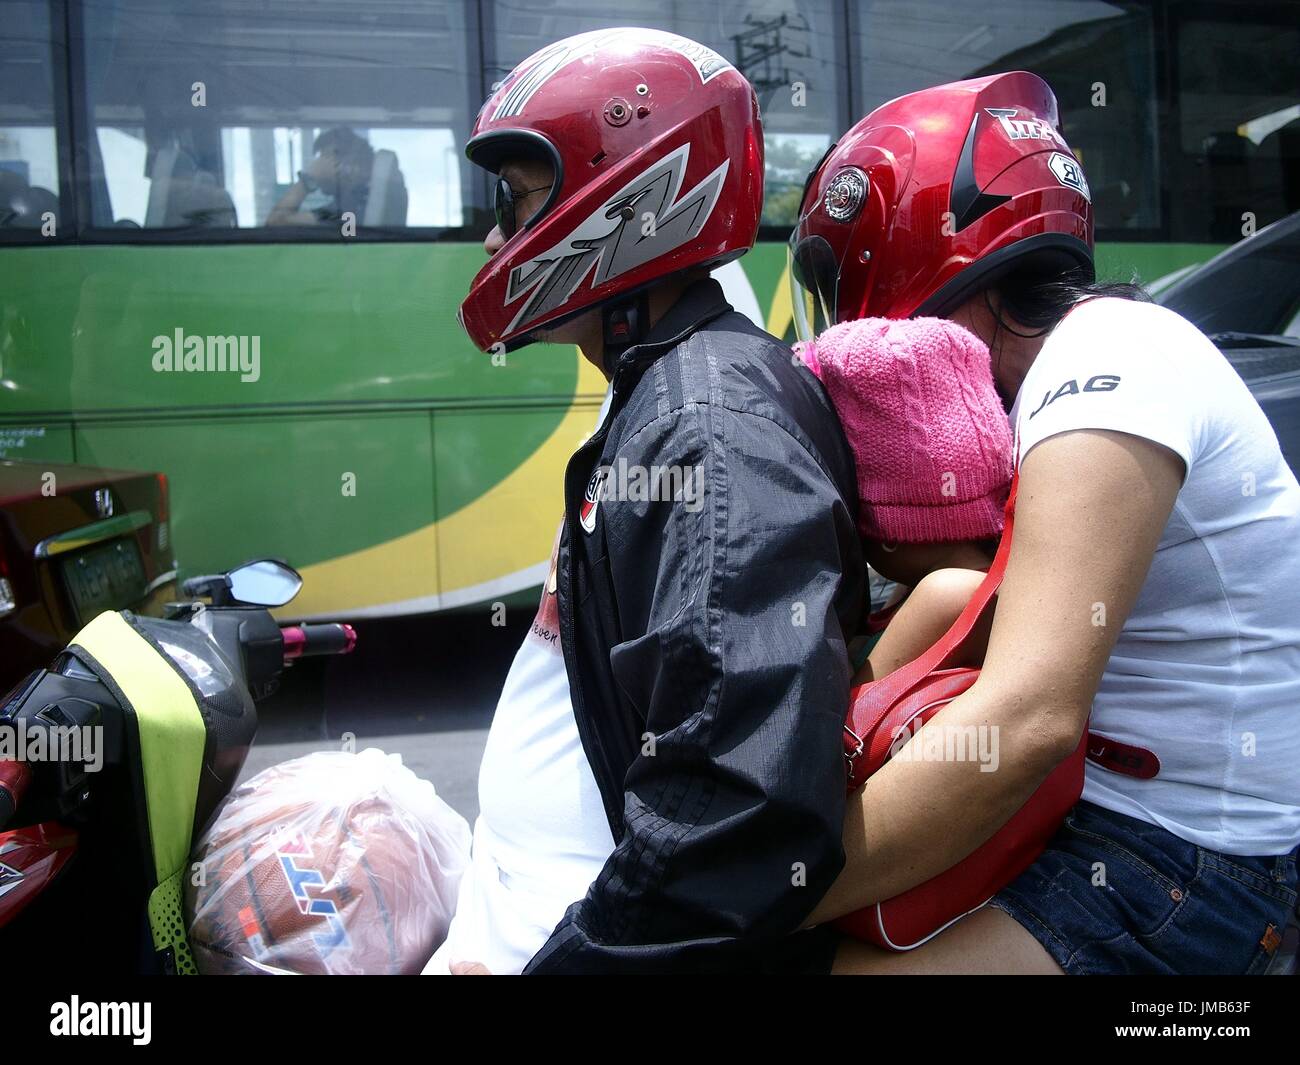 ANTIPOLO CITY, Filipinas - Julio 21, 2017: un padre y una madre con su hijo andar en motocicleta. Foto de stock